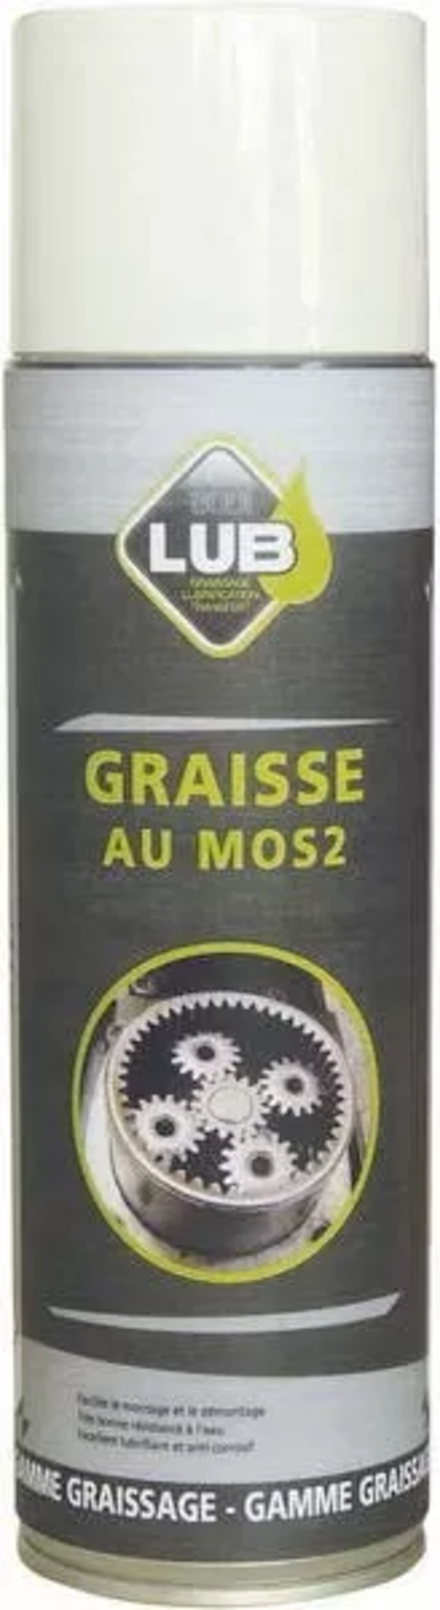 Graisse mos2 500ml - 10020